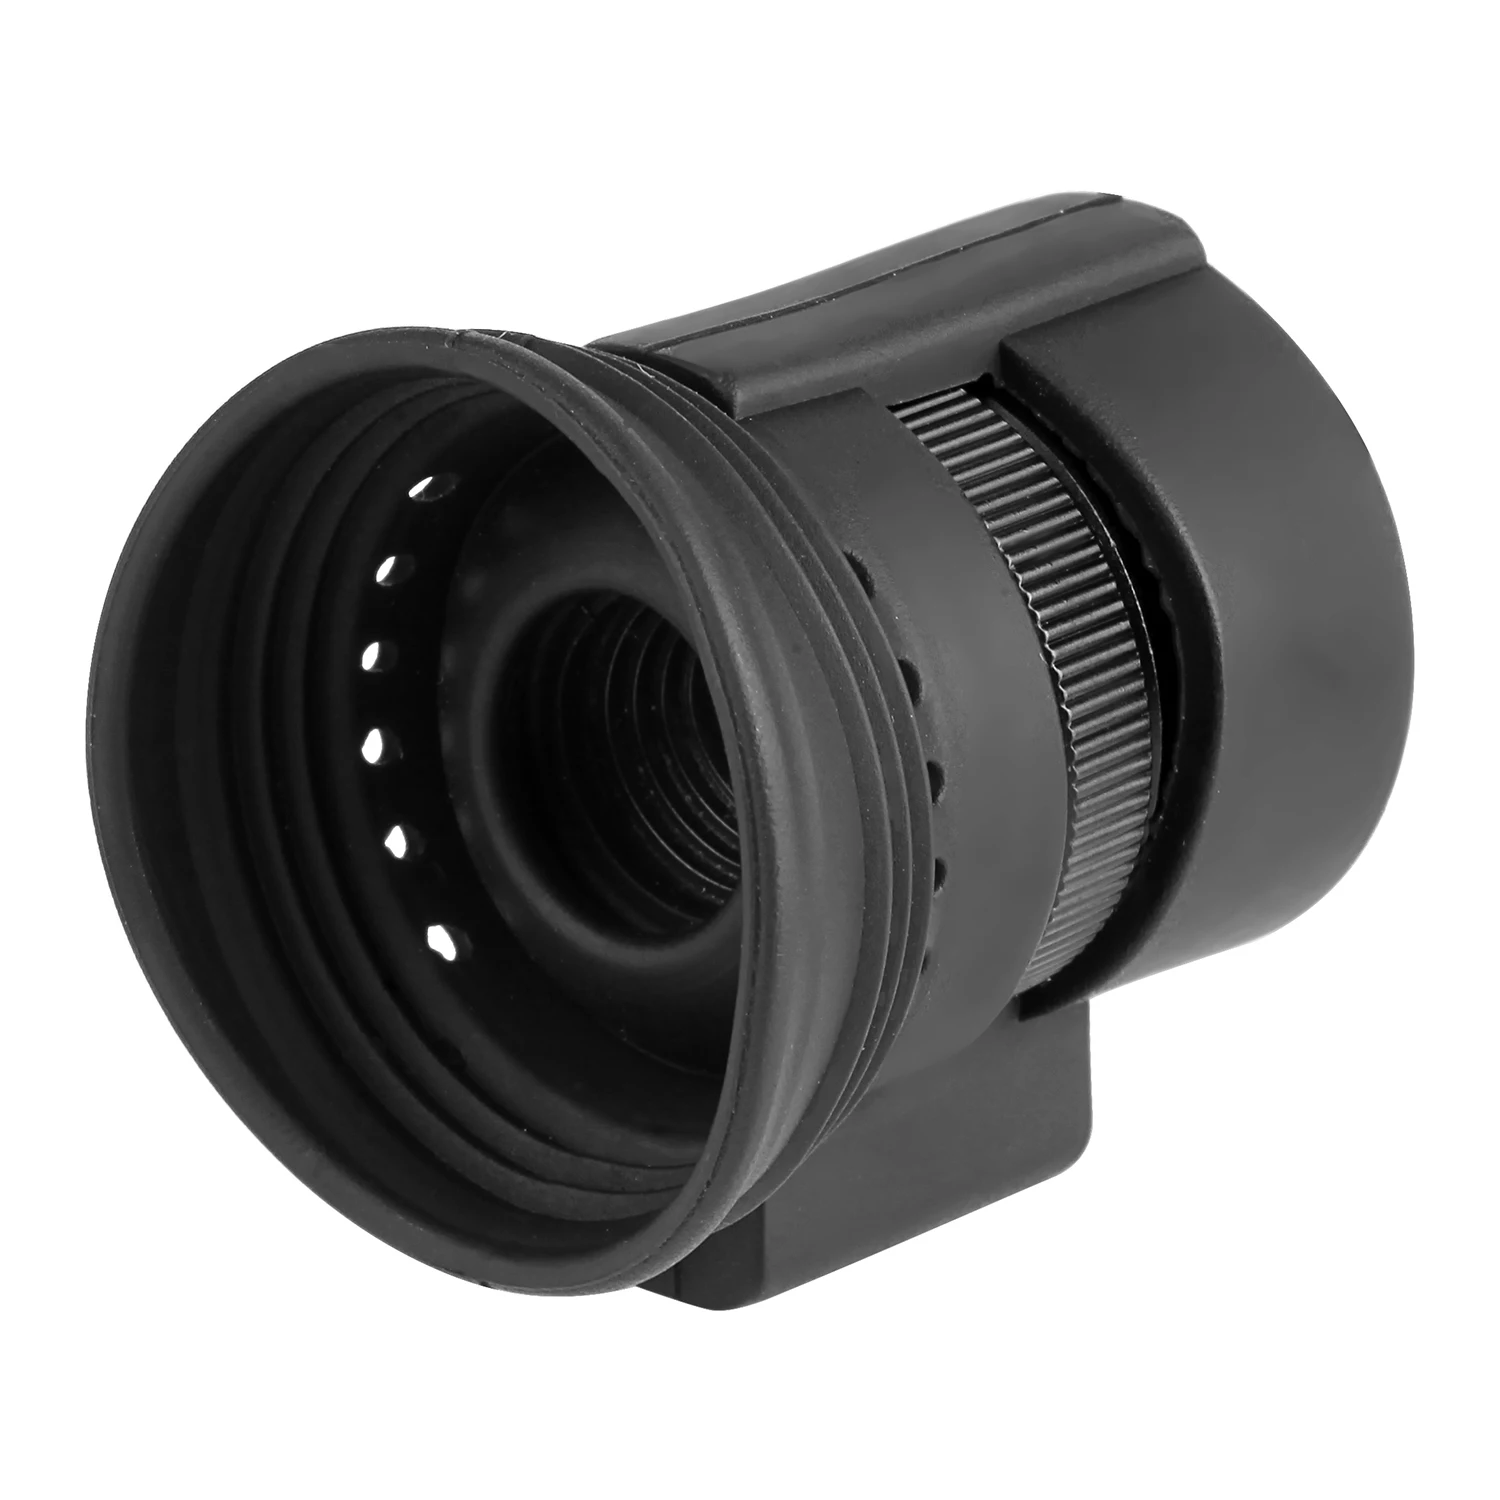 FFYY-80 дюймов монокуляр мини микро-дисплей HD ночное видение с оголовьем очки AV серии для FPV монитор